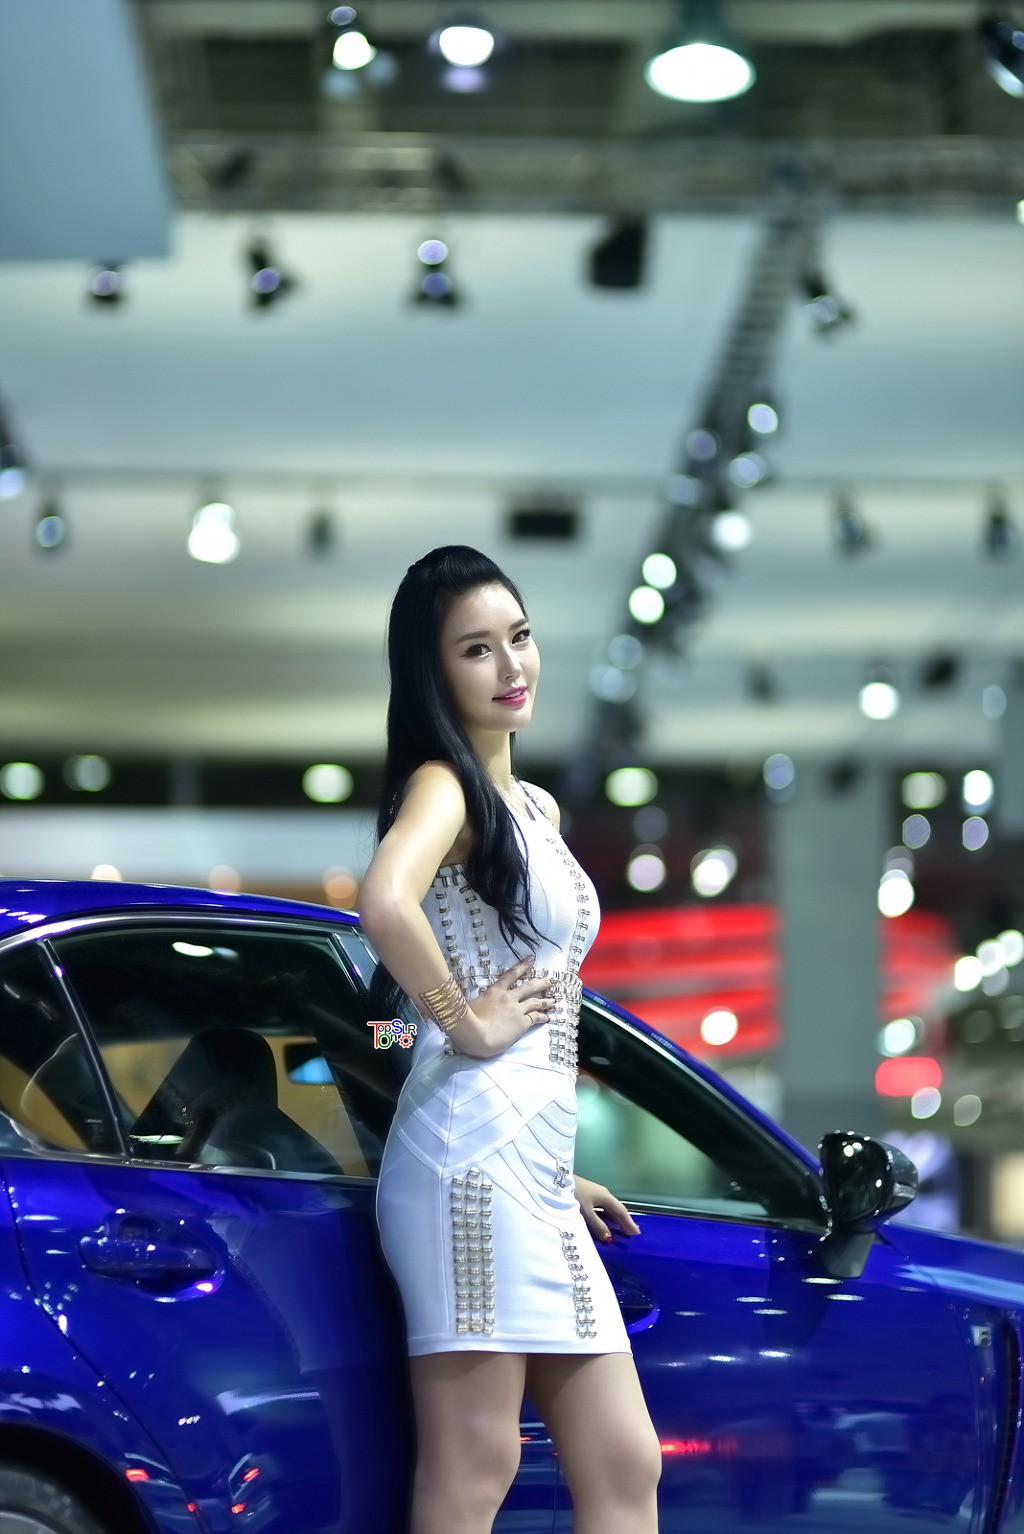 攝影︰韓國車展上的美女模特系列1︰這高跟鞋也是醉了/ 作者: / 來源: